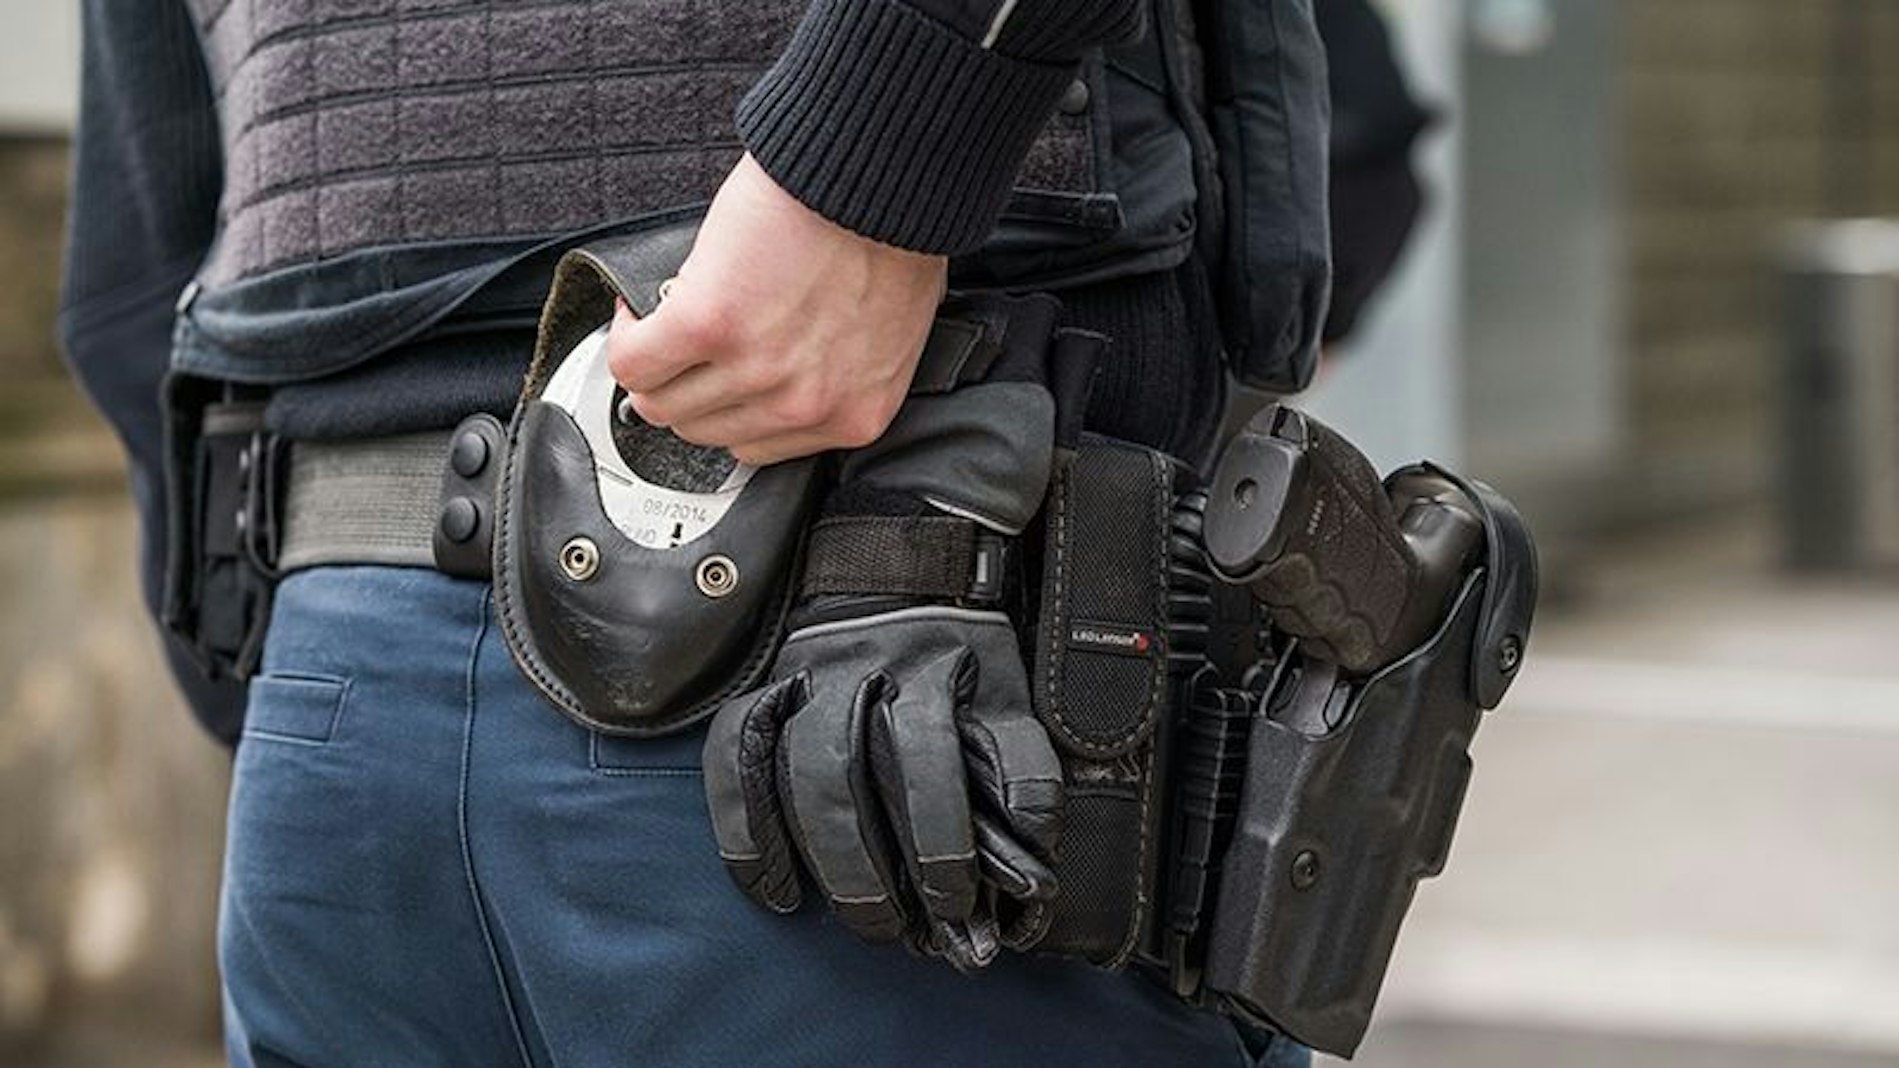 Der Rücken eines Bundespolizisten, der gerade nach hinten in seinen Gürtel greift, um Handschellen hervor zu holen.